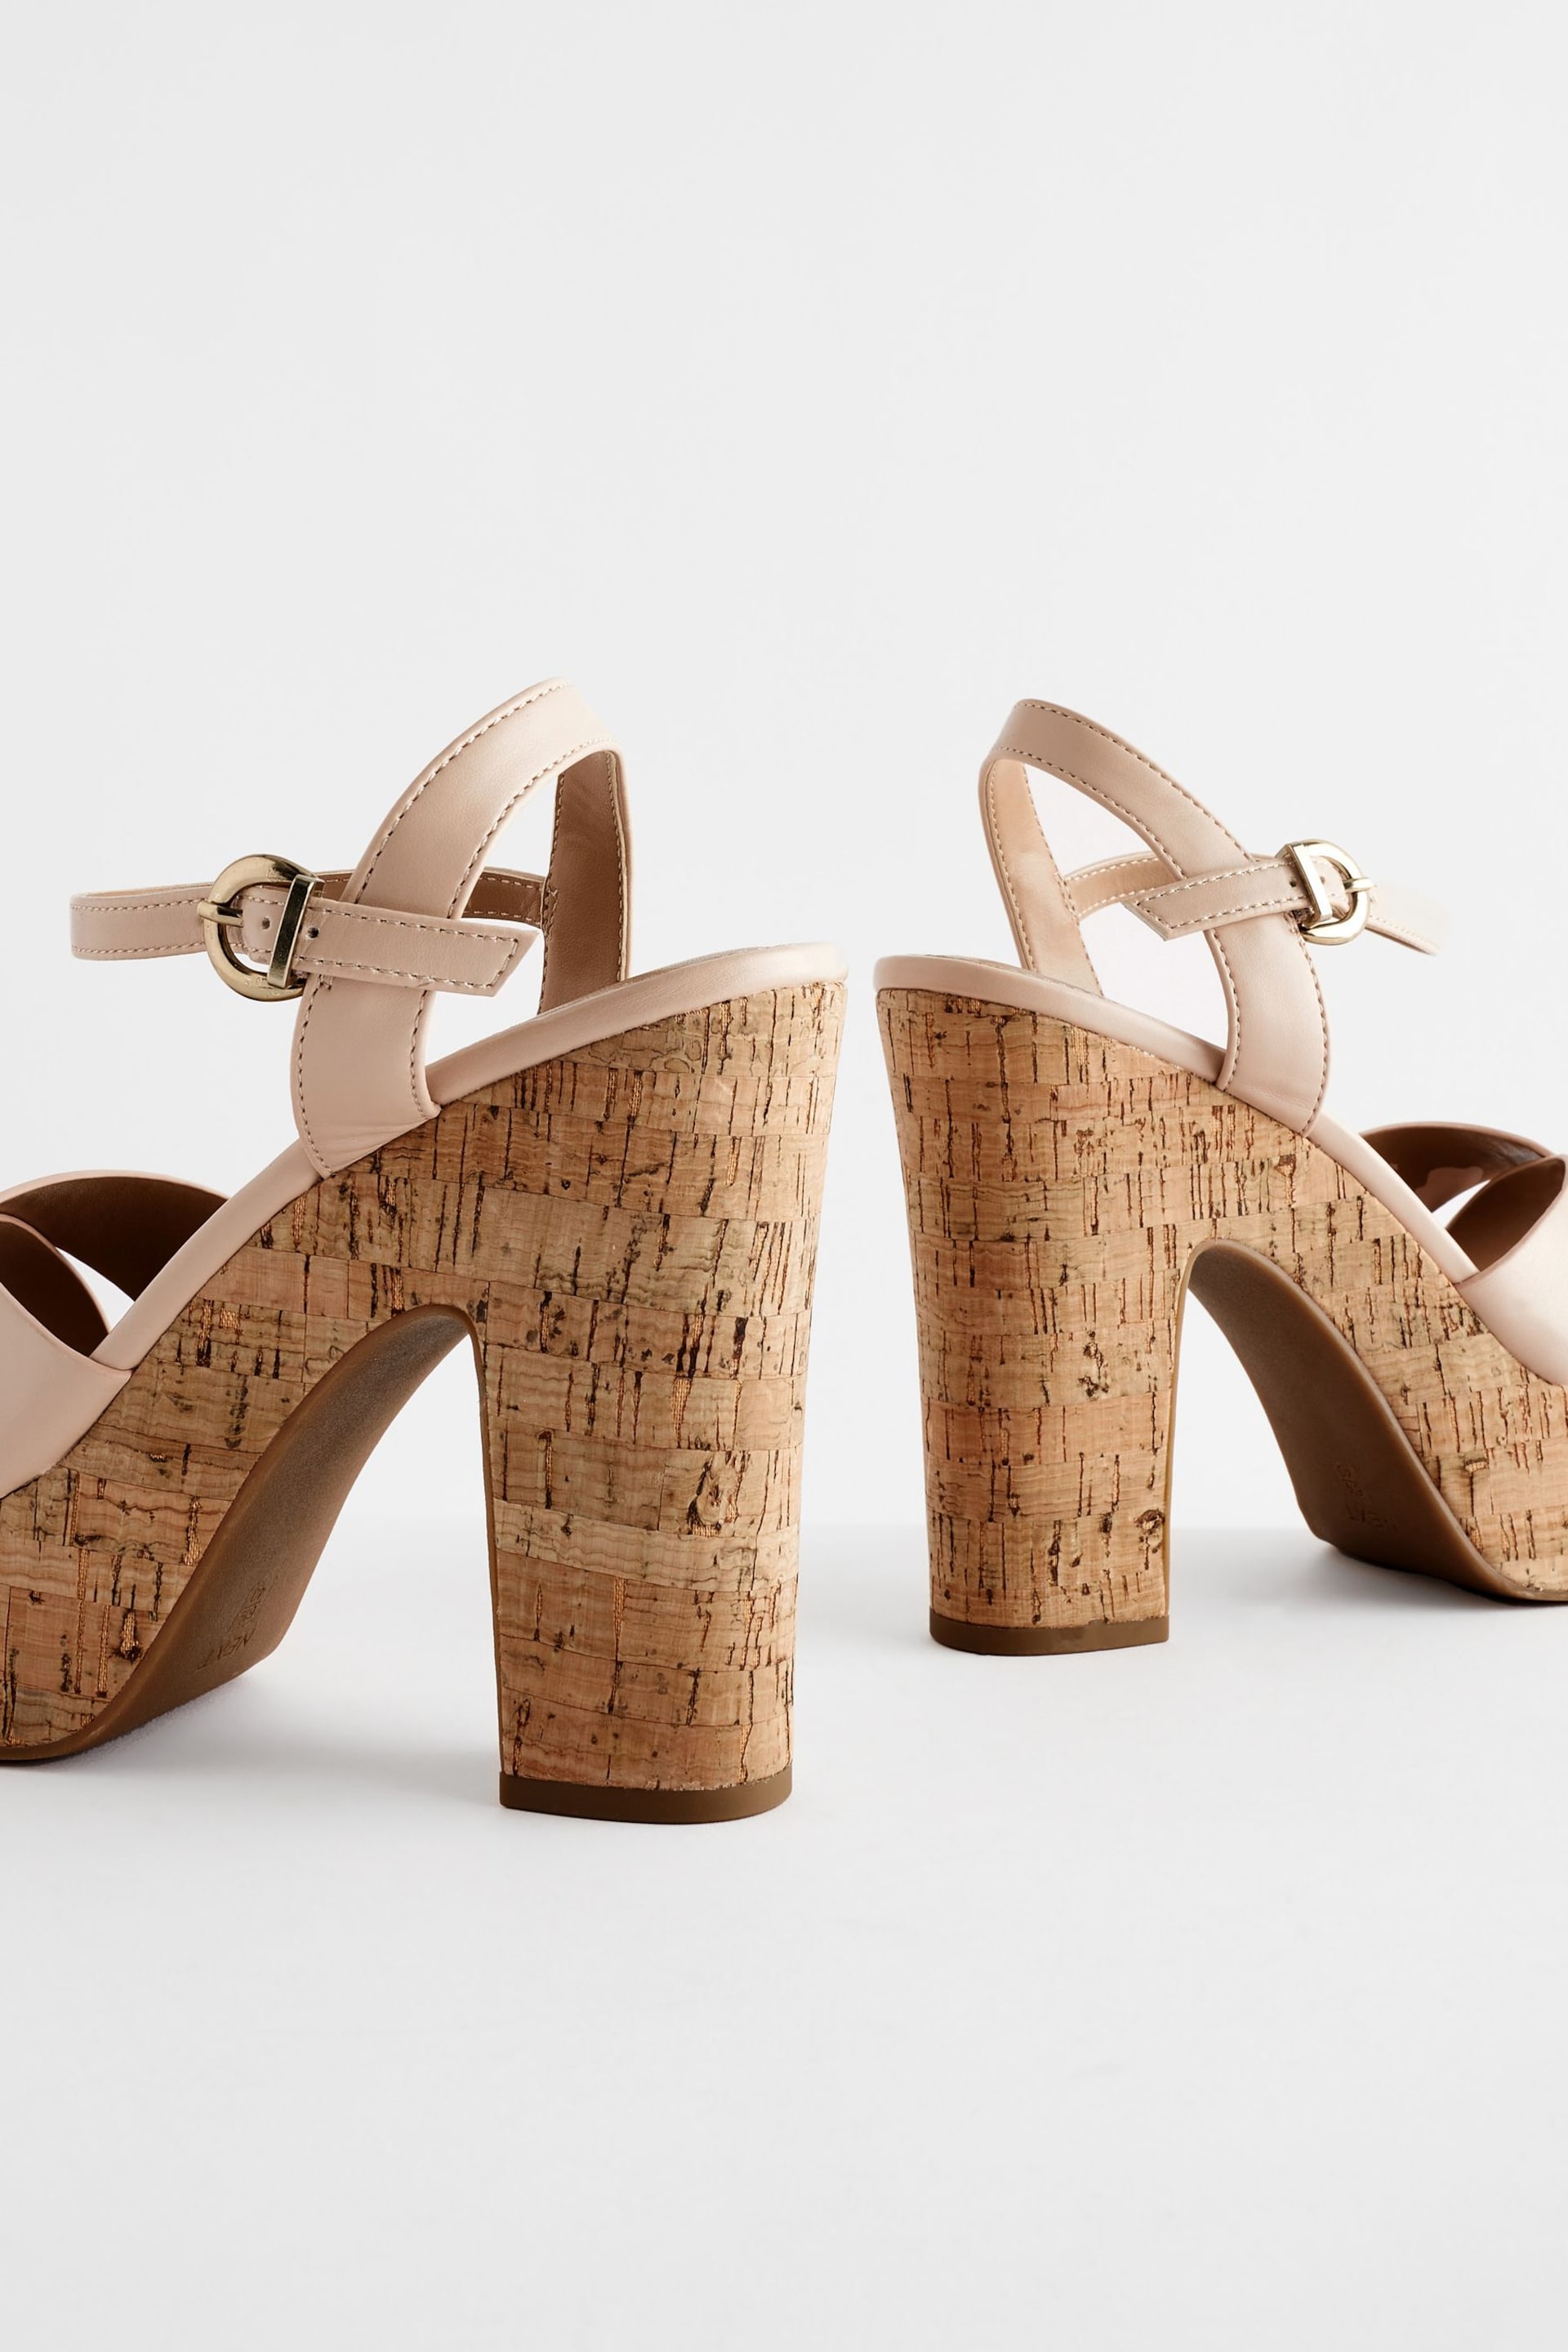 Nude Forever Comfort® Cork Platform Sandals - Image 6 of 7